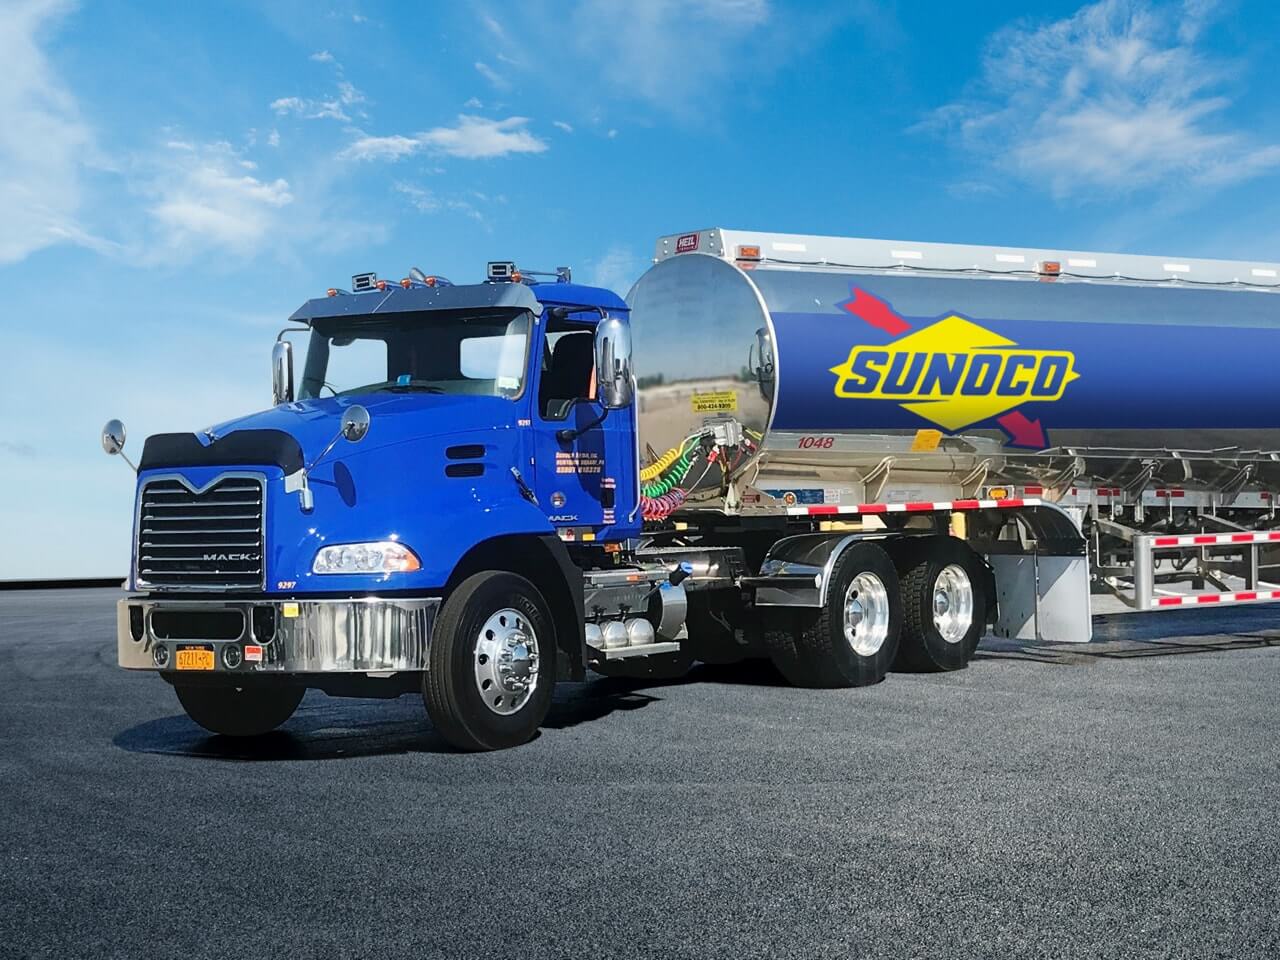 Sunoco fuel truck